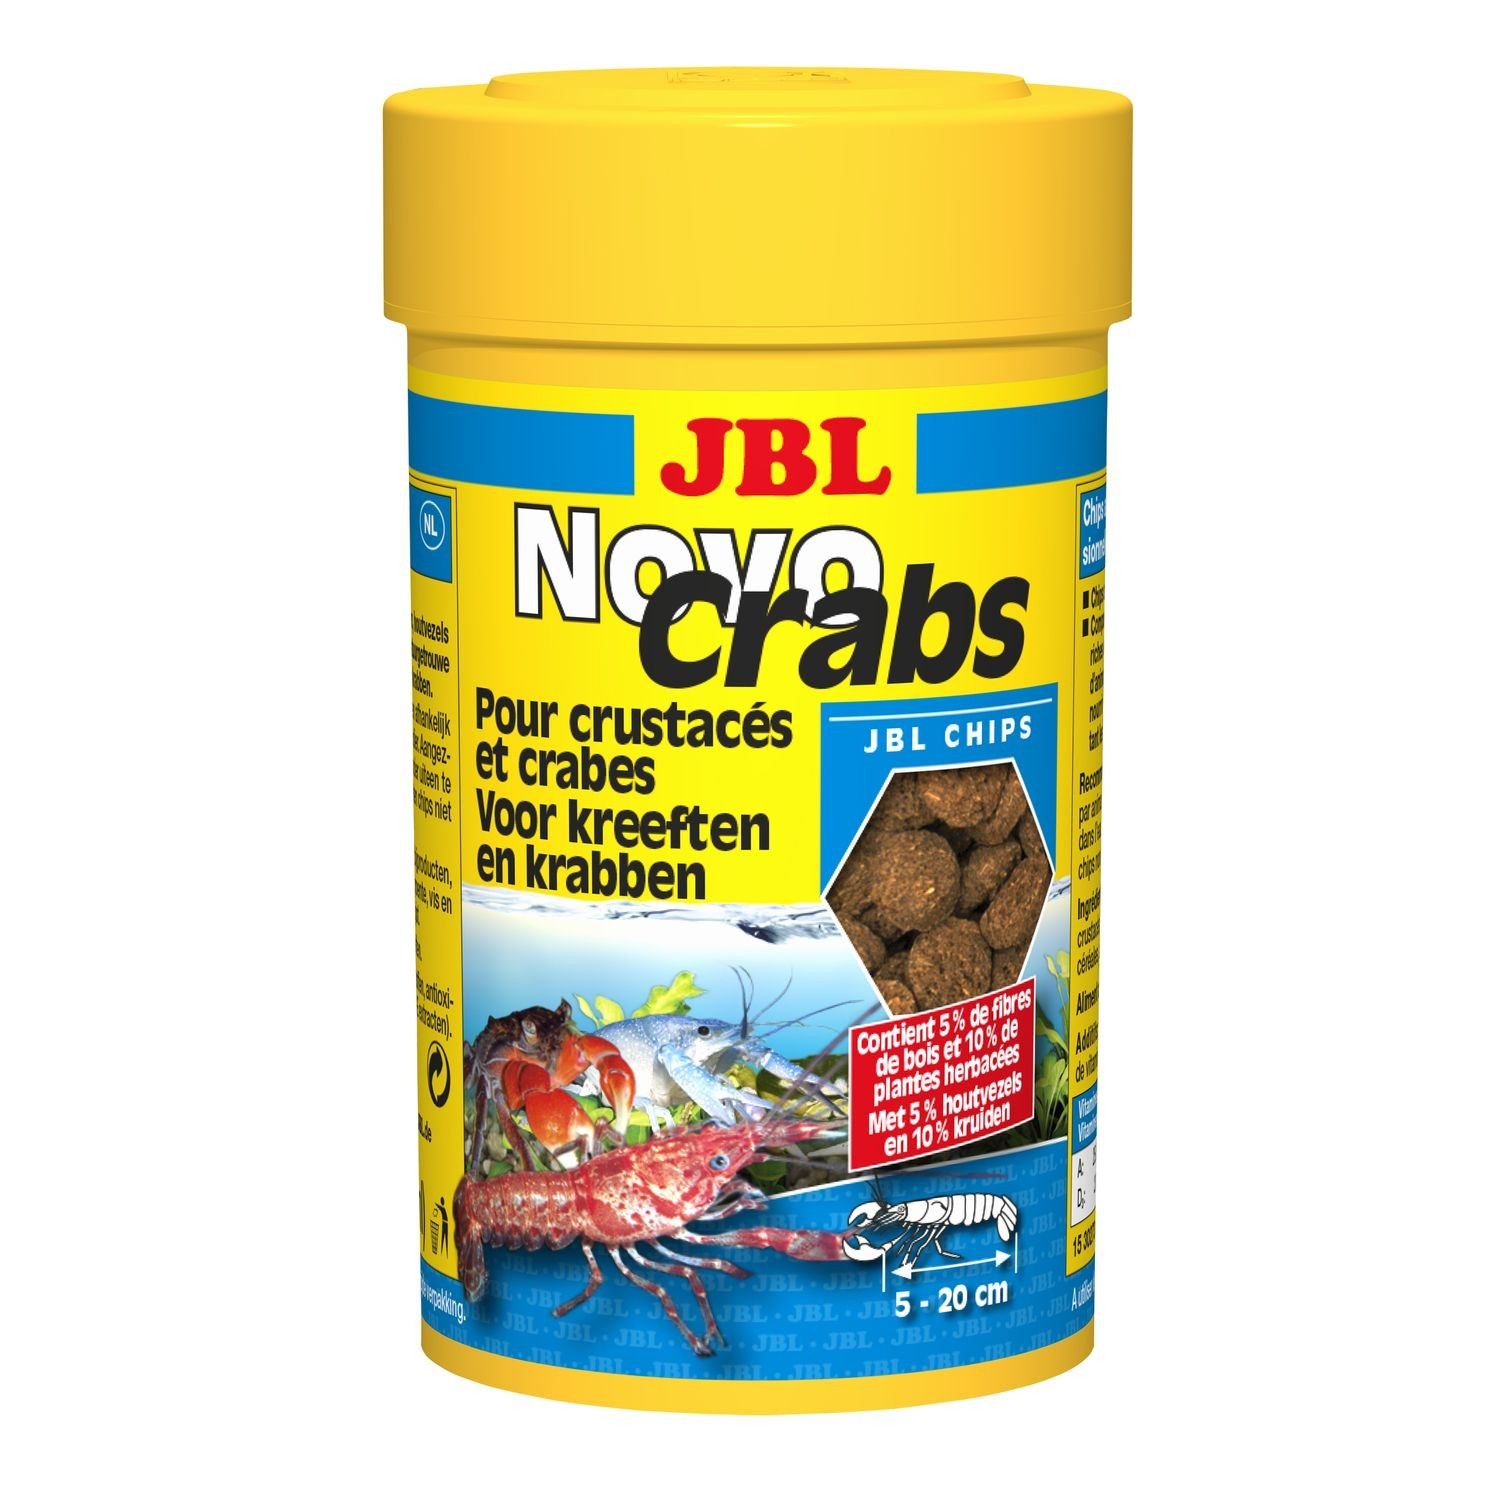 JBL NovoCrabs nourriture pour crustacés